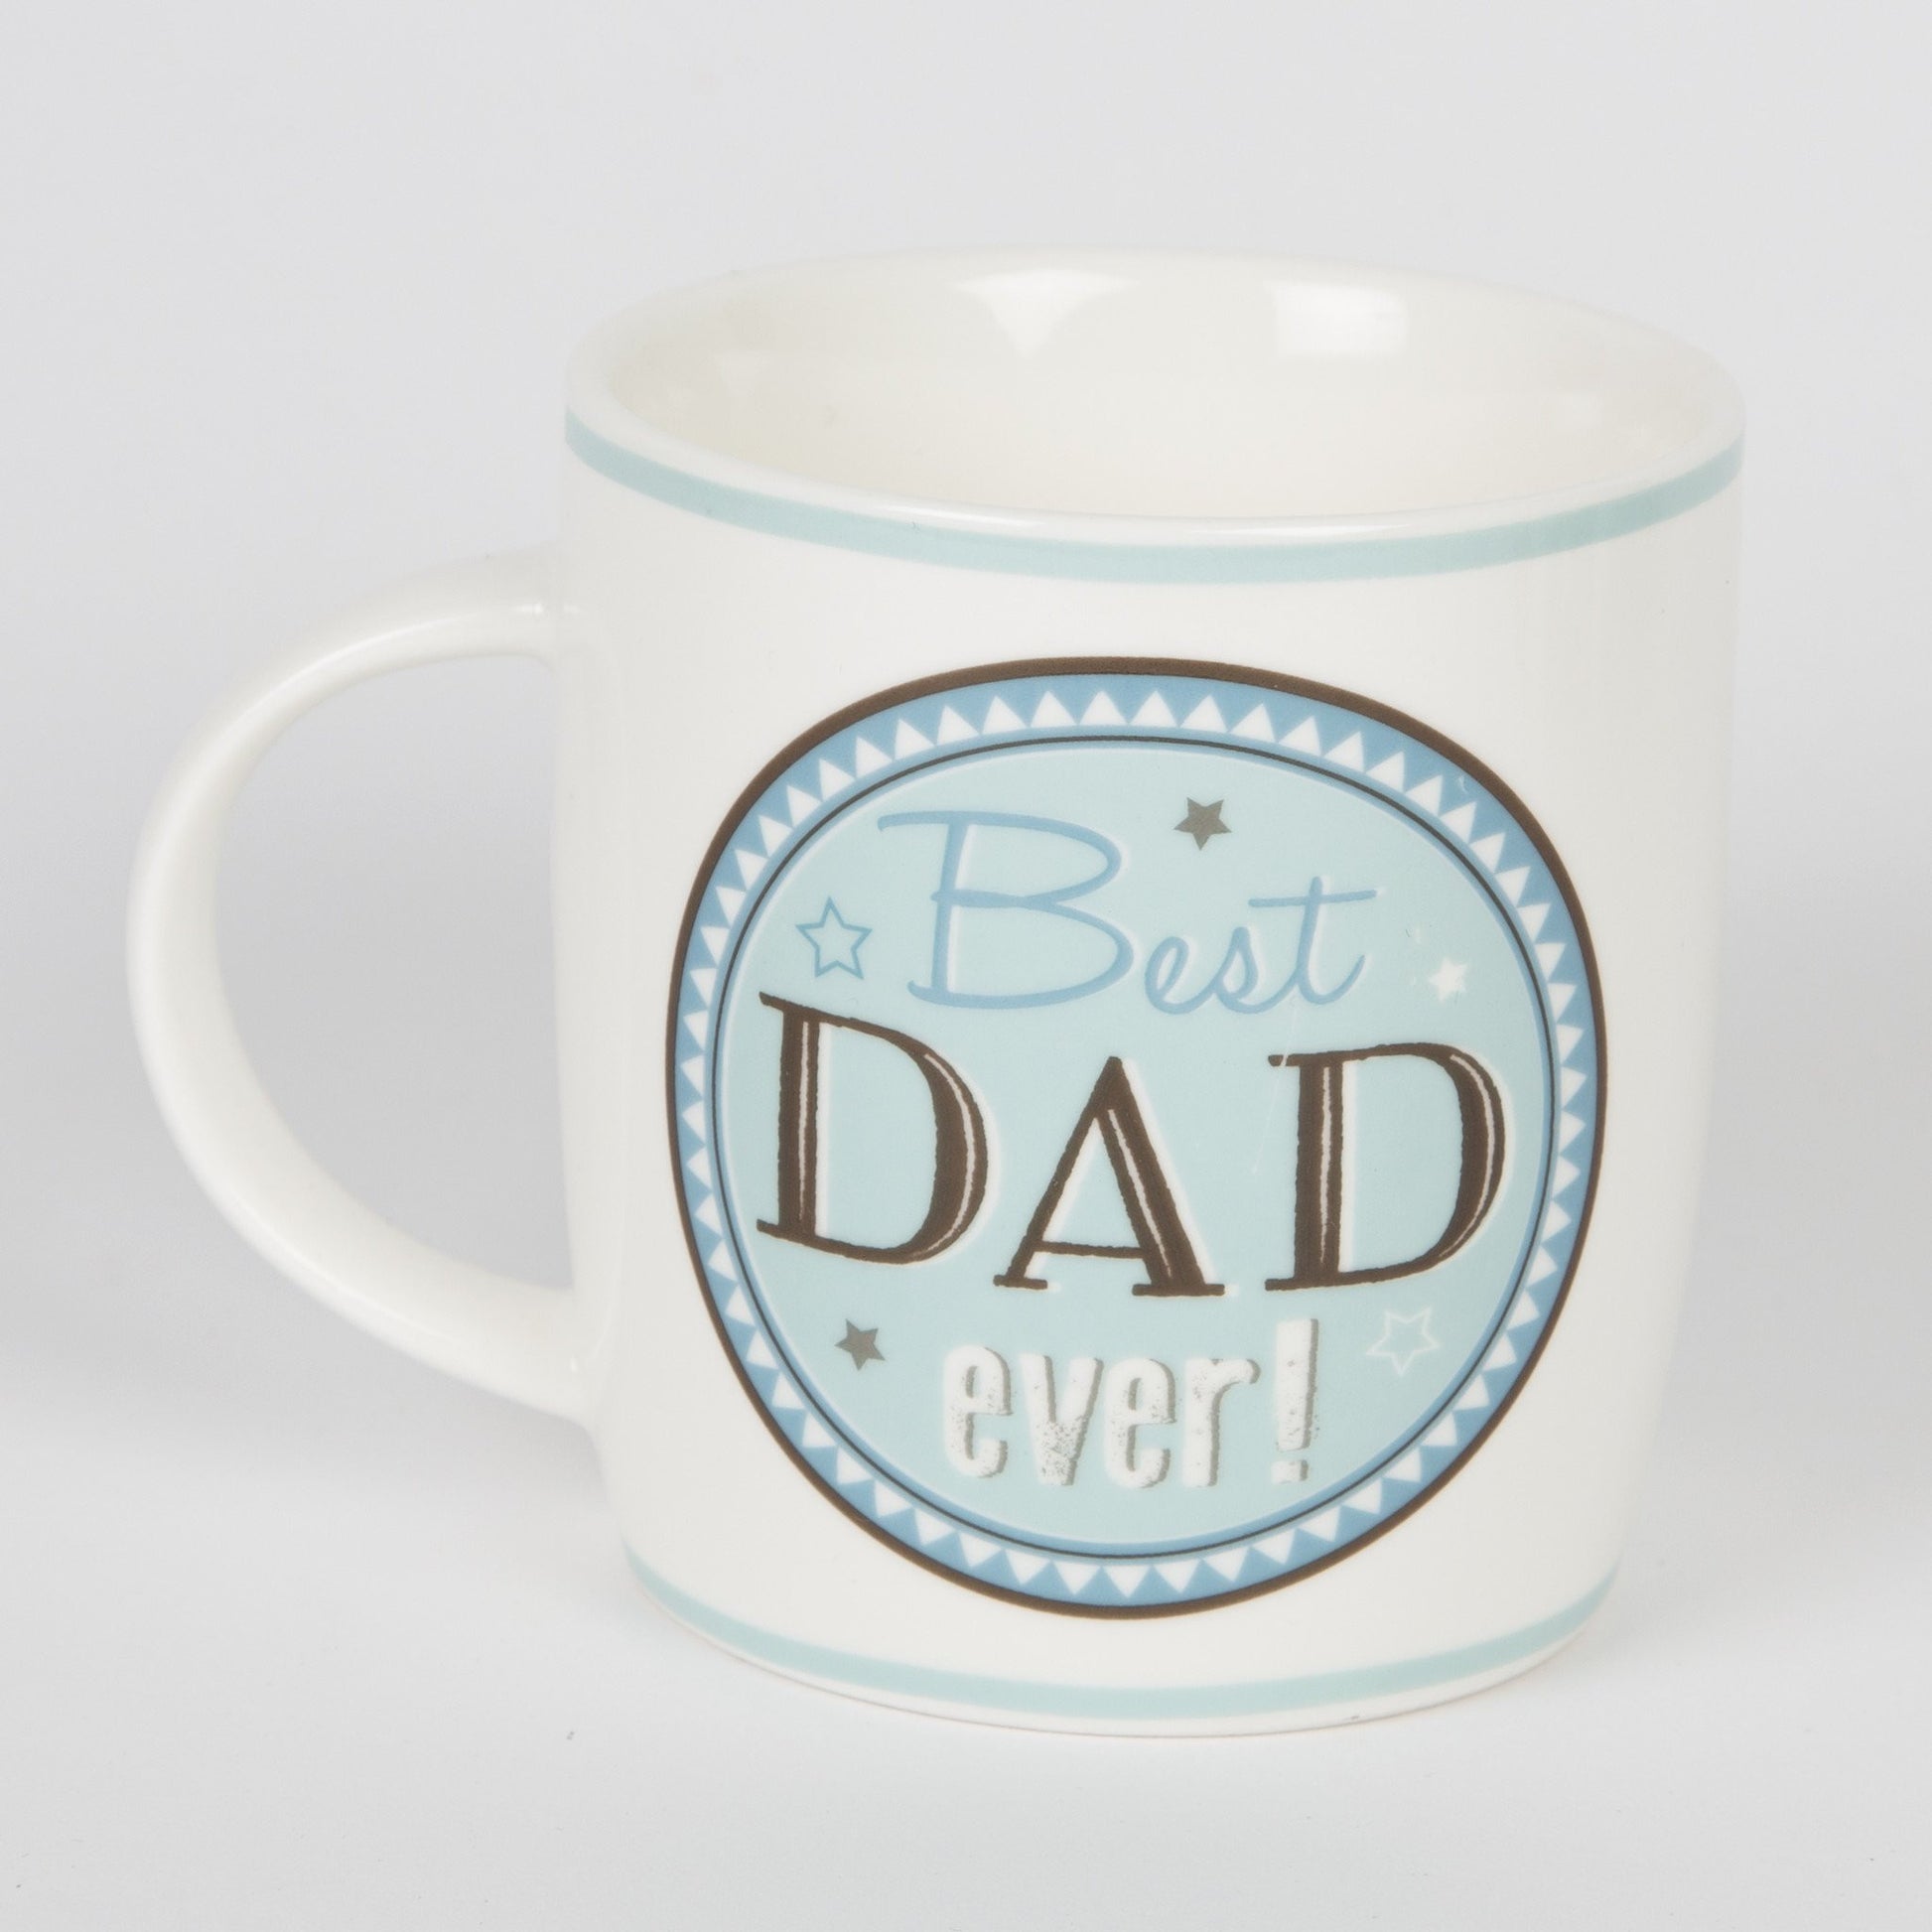 Mug with Best Dad Ever design